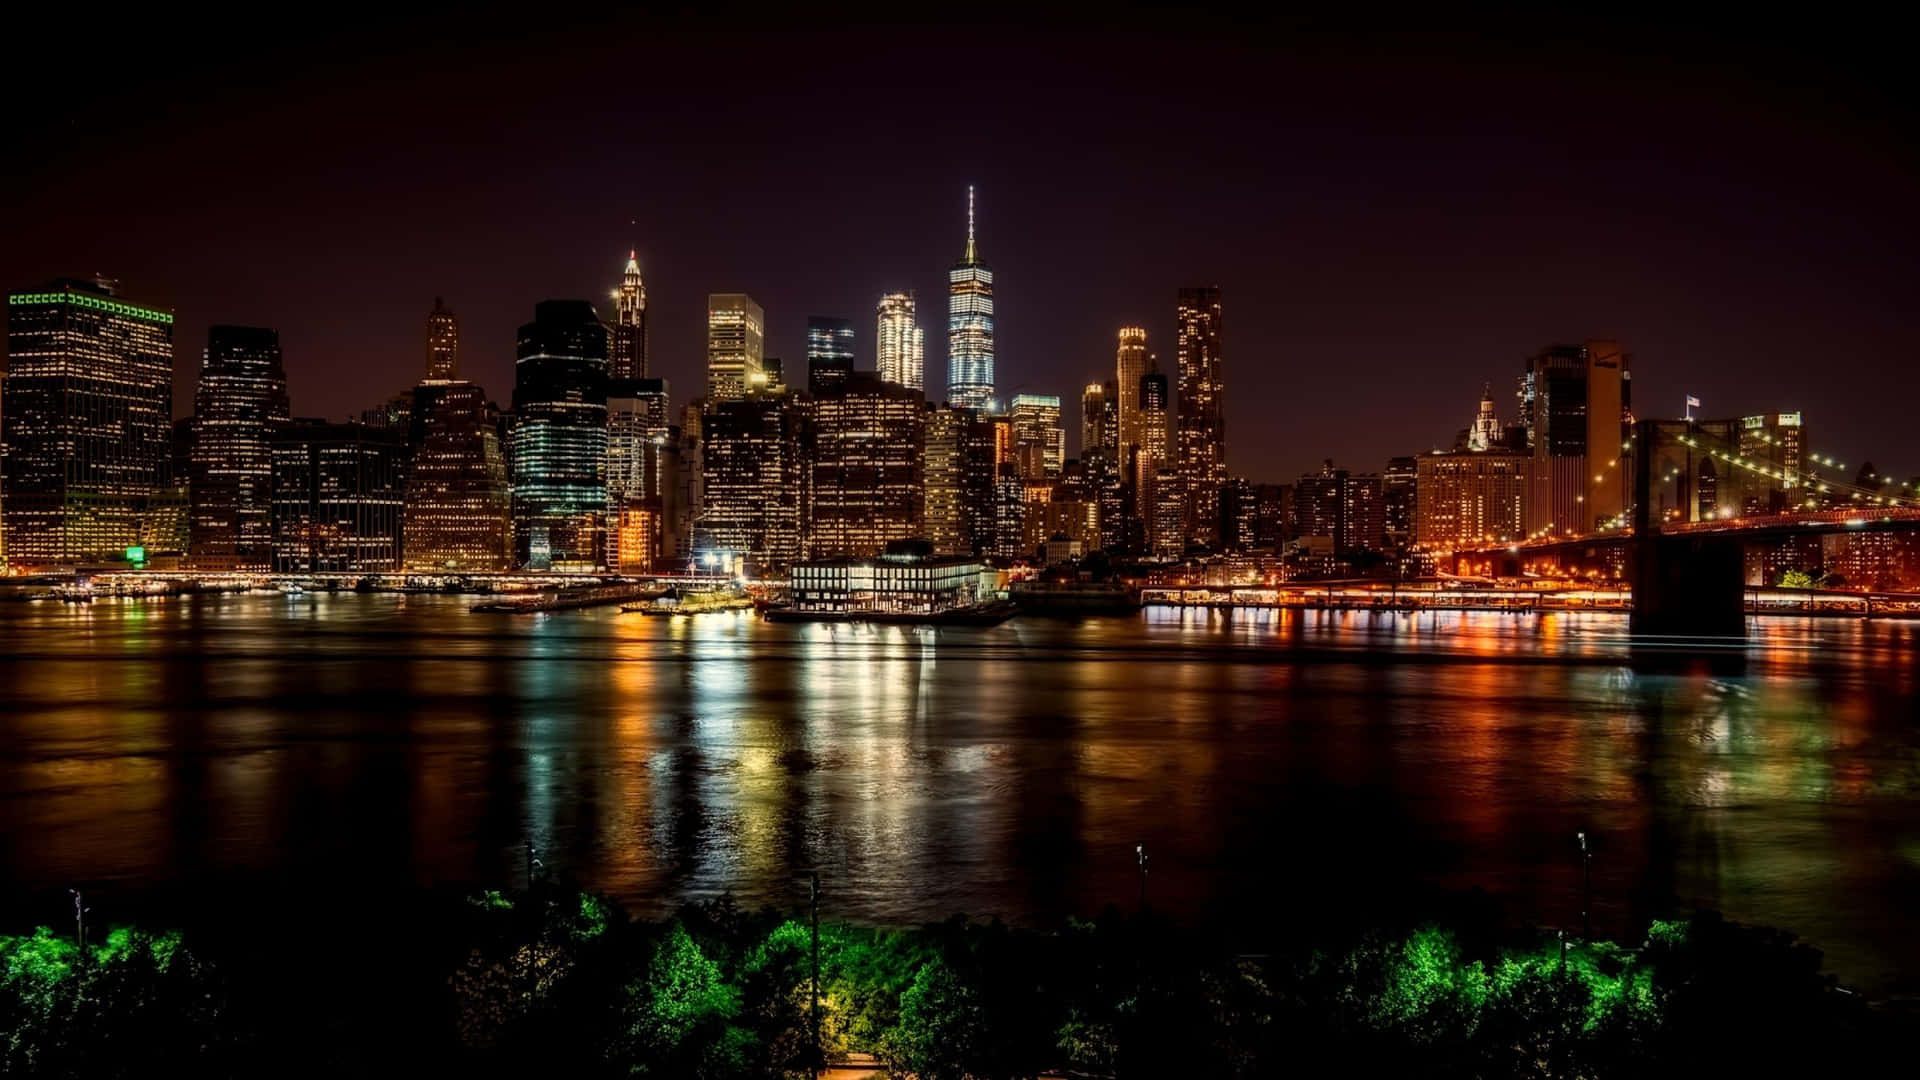 Imagenpanorámica De La Ciudad De Nueva York De Noche